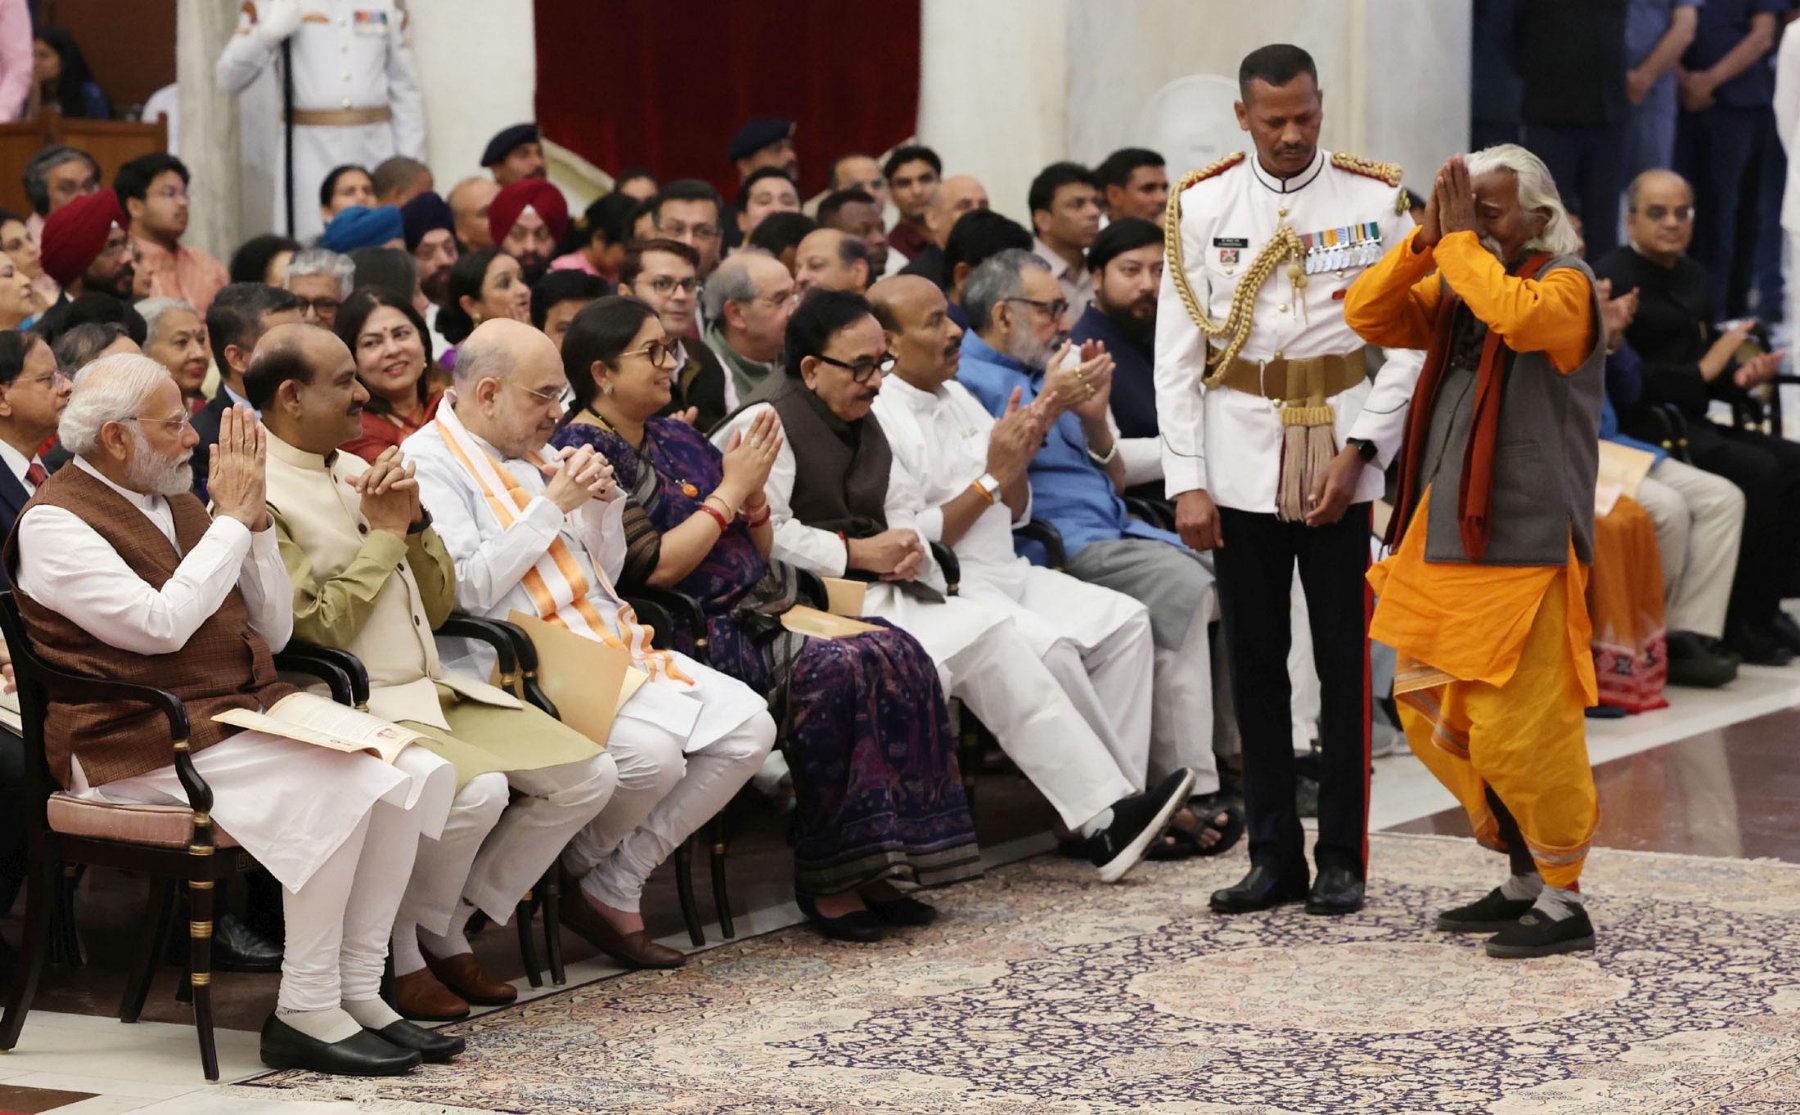 नई दिल्ली में बुधवार 22 मार्च को राष्ट्रपति द्रौपदी मुर्मू, उपराष्ट्रपति जगदीप धनखड़ और प्रधानमंत्री नरेंद्र मोदी, राष्ट्रपति भवन में पद्म पुरस्कार विजेताओं के साथ। हिन्दुस्थान समाचार/ फोटो गणेश बिष्ट